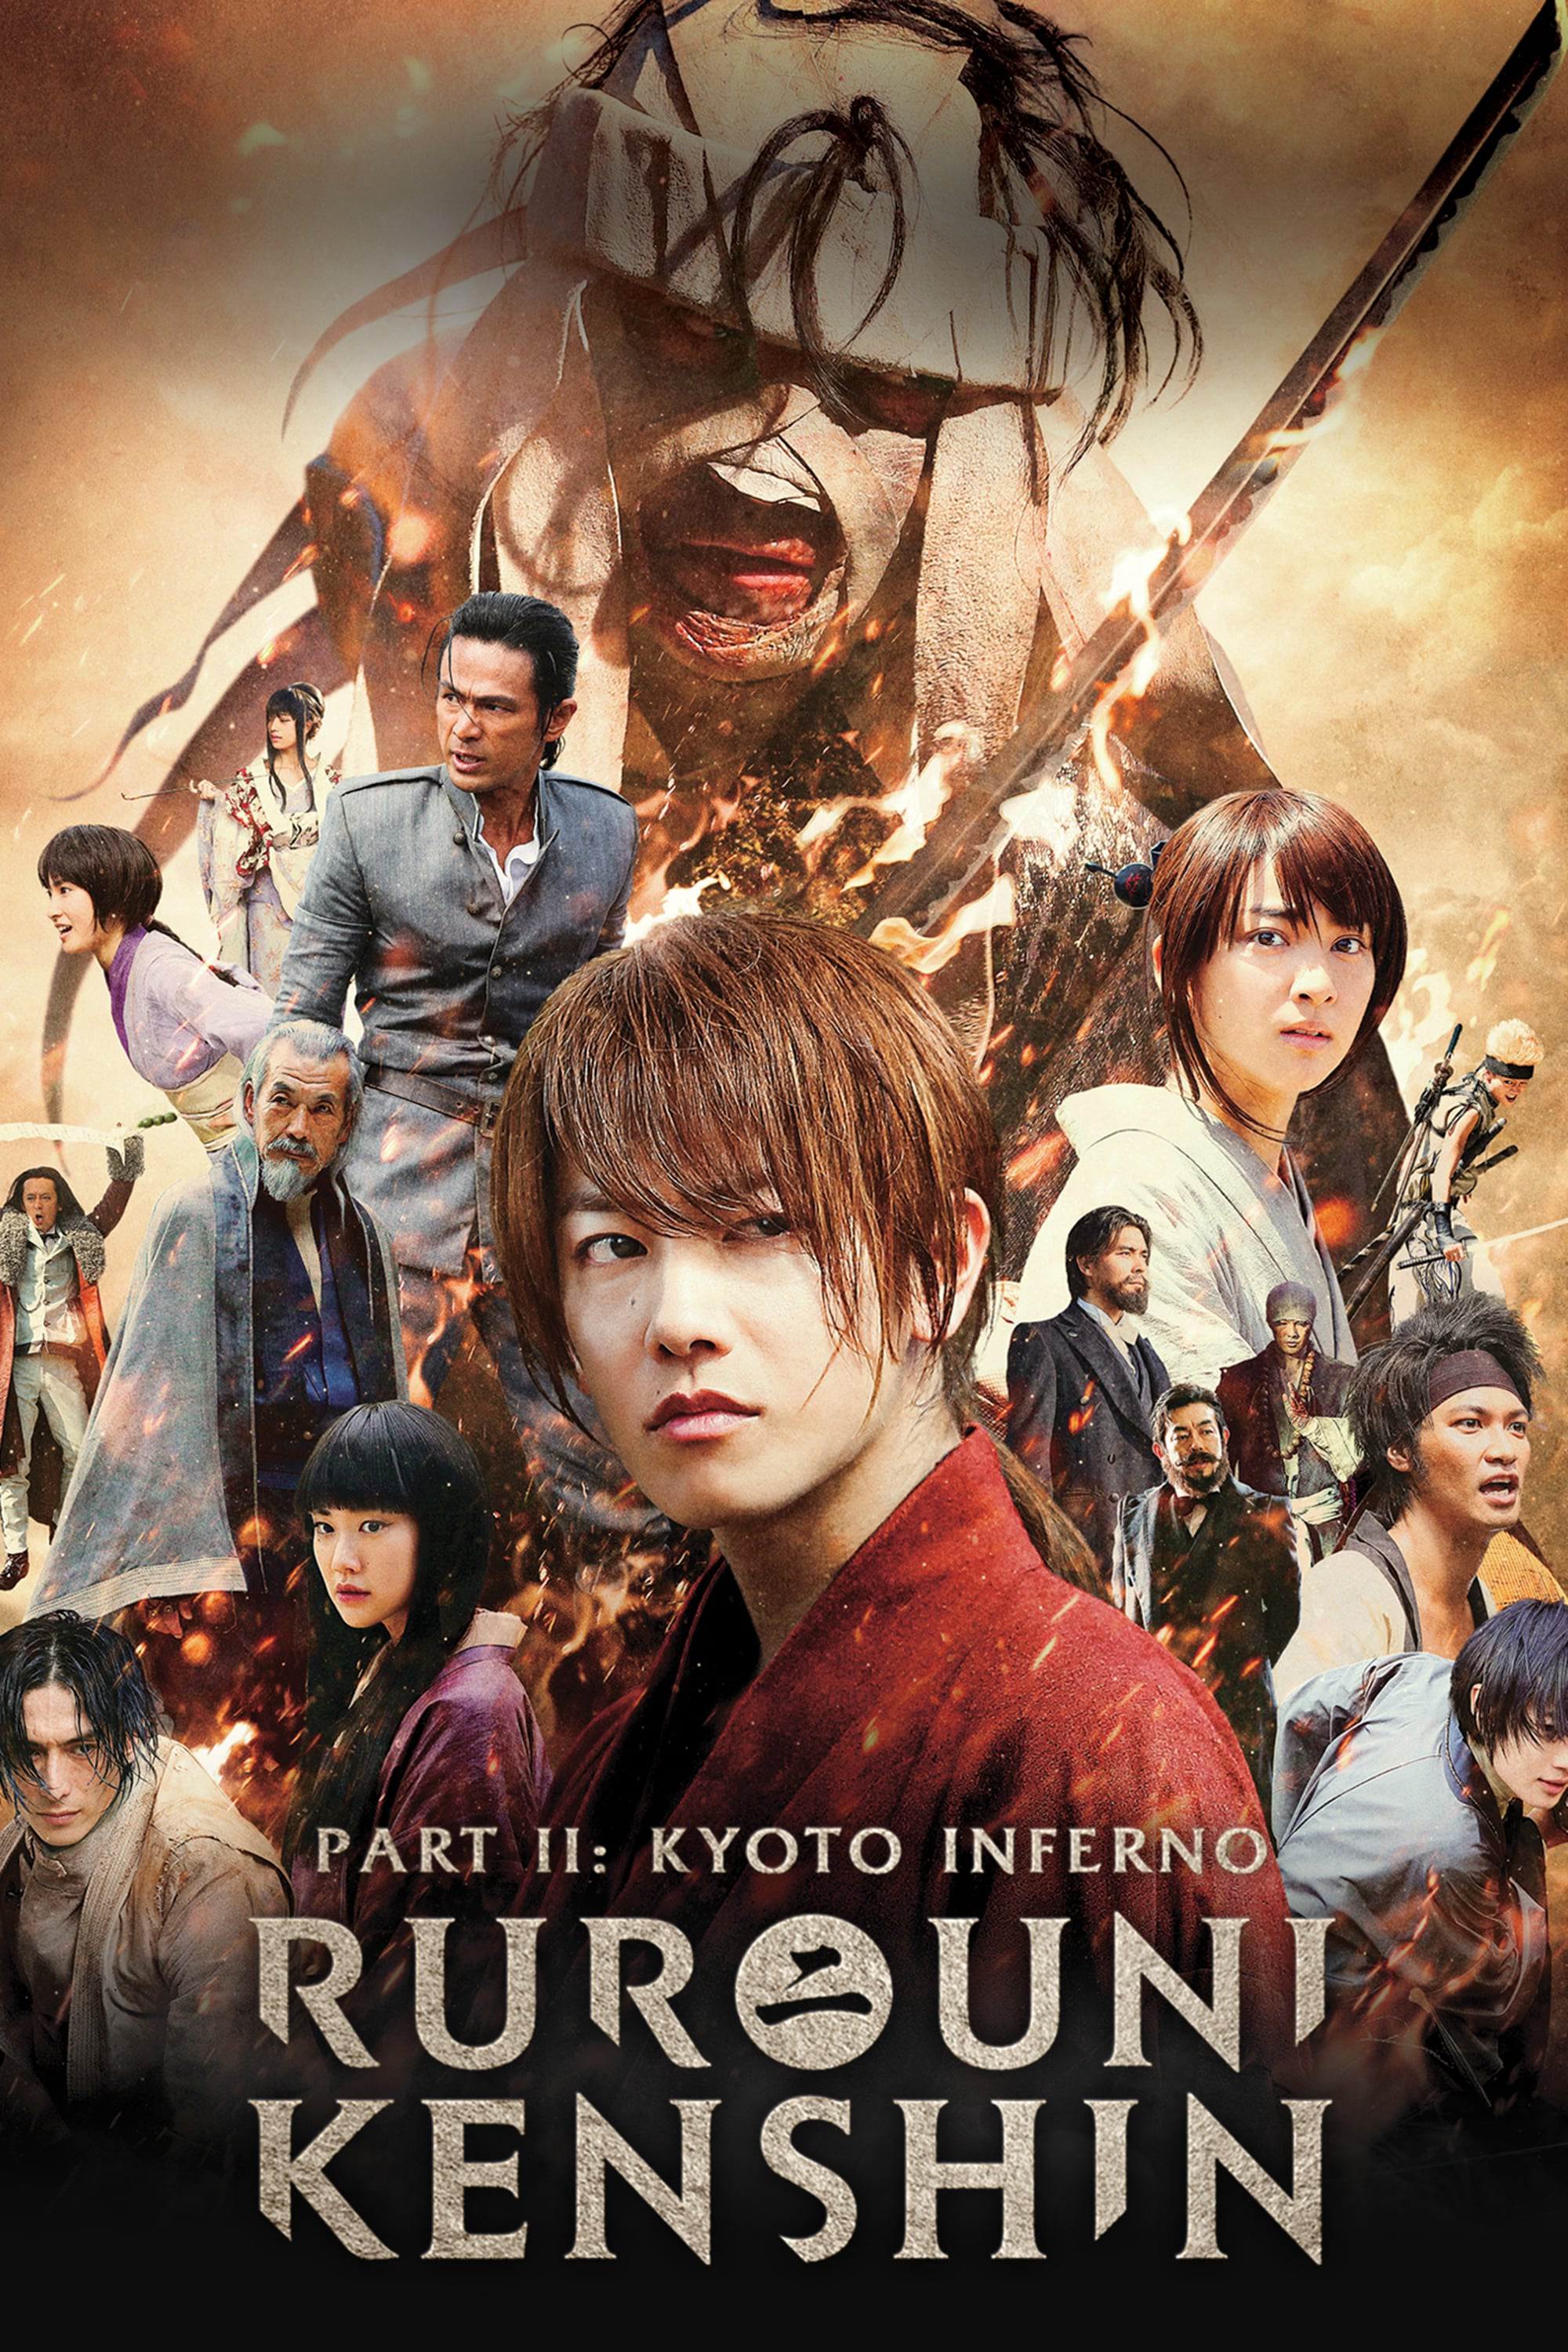 Xem Phim Lãng khách Kenshin 2: Đại Hỏa Kyoto (Rurouni Kenshin Part II: Kyoto Inferno)